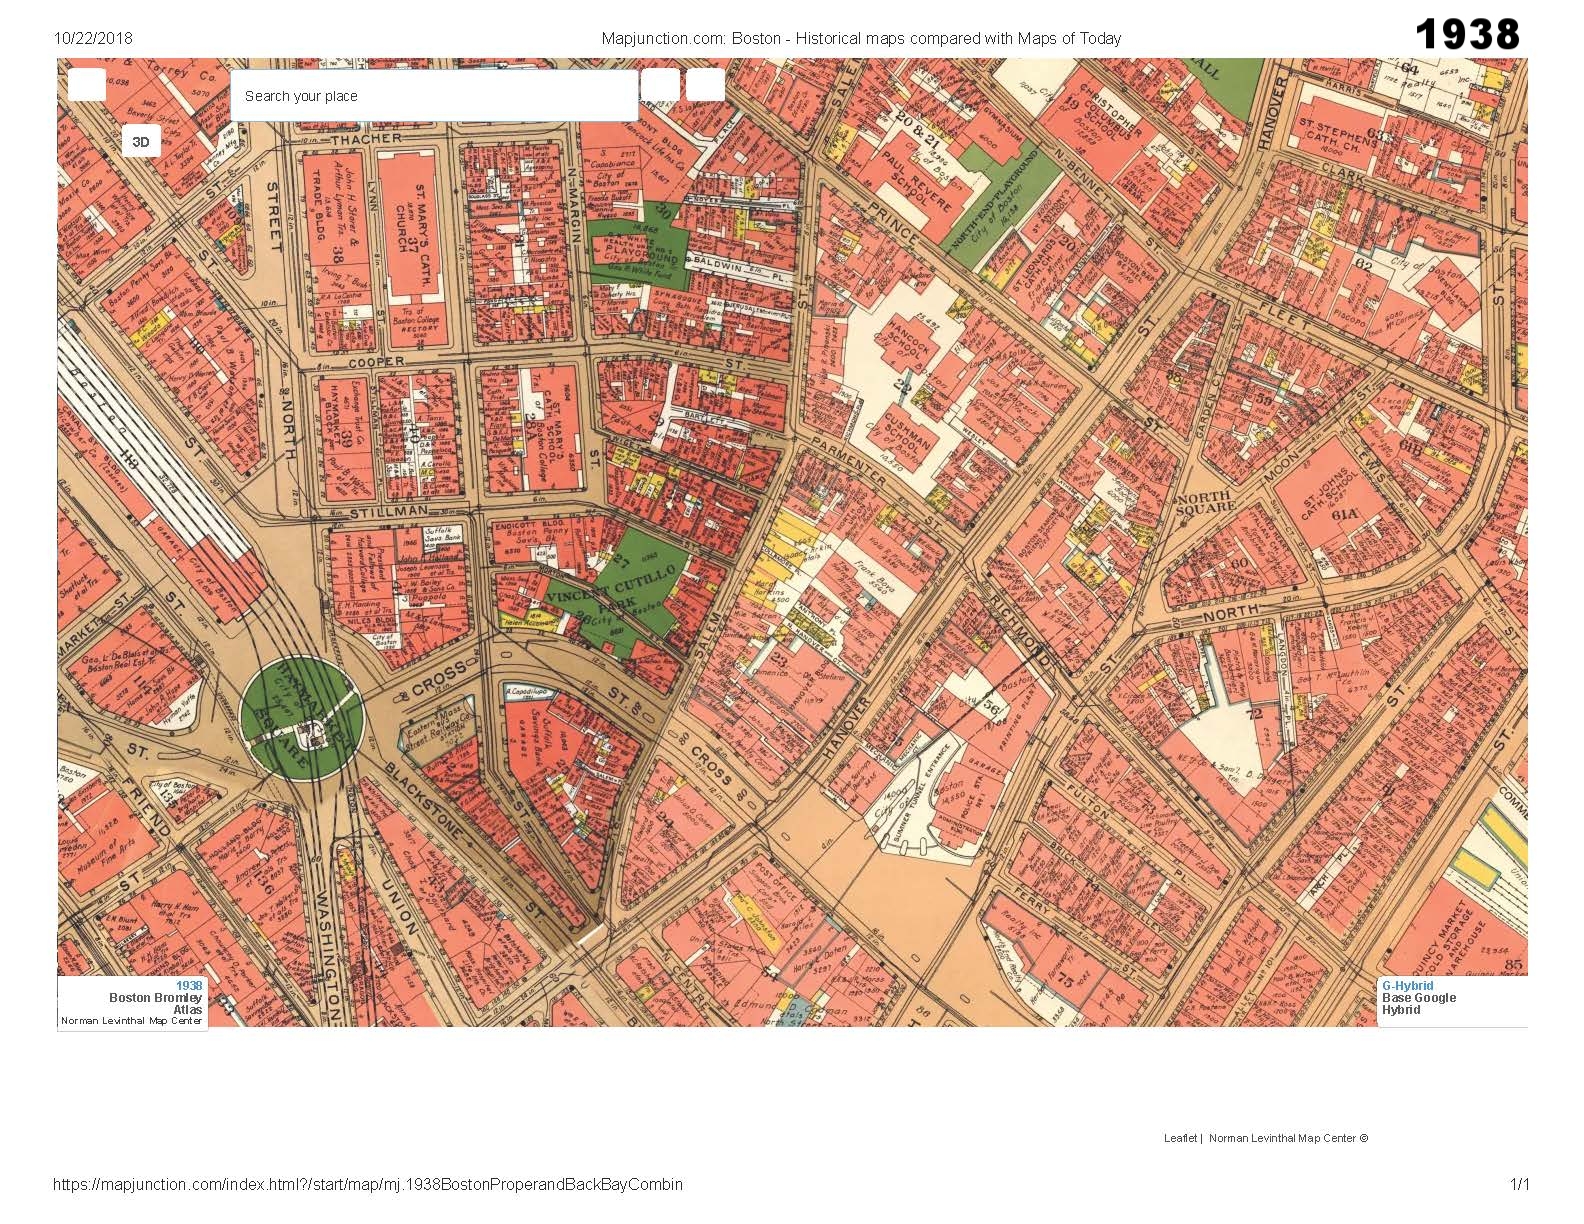 1938 historic map traces the development of cutillo park and morton street area